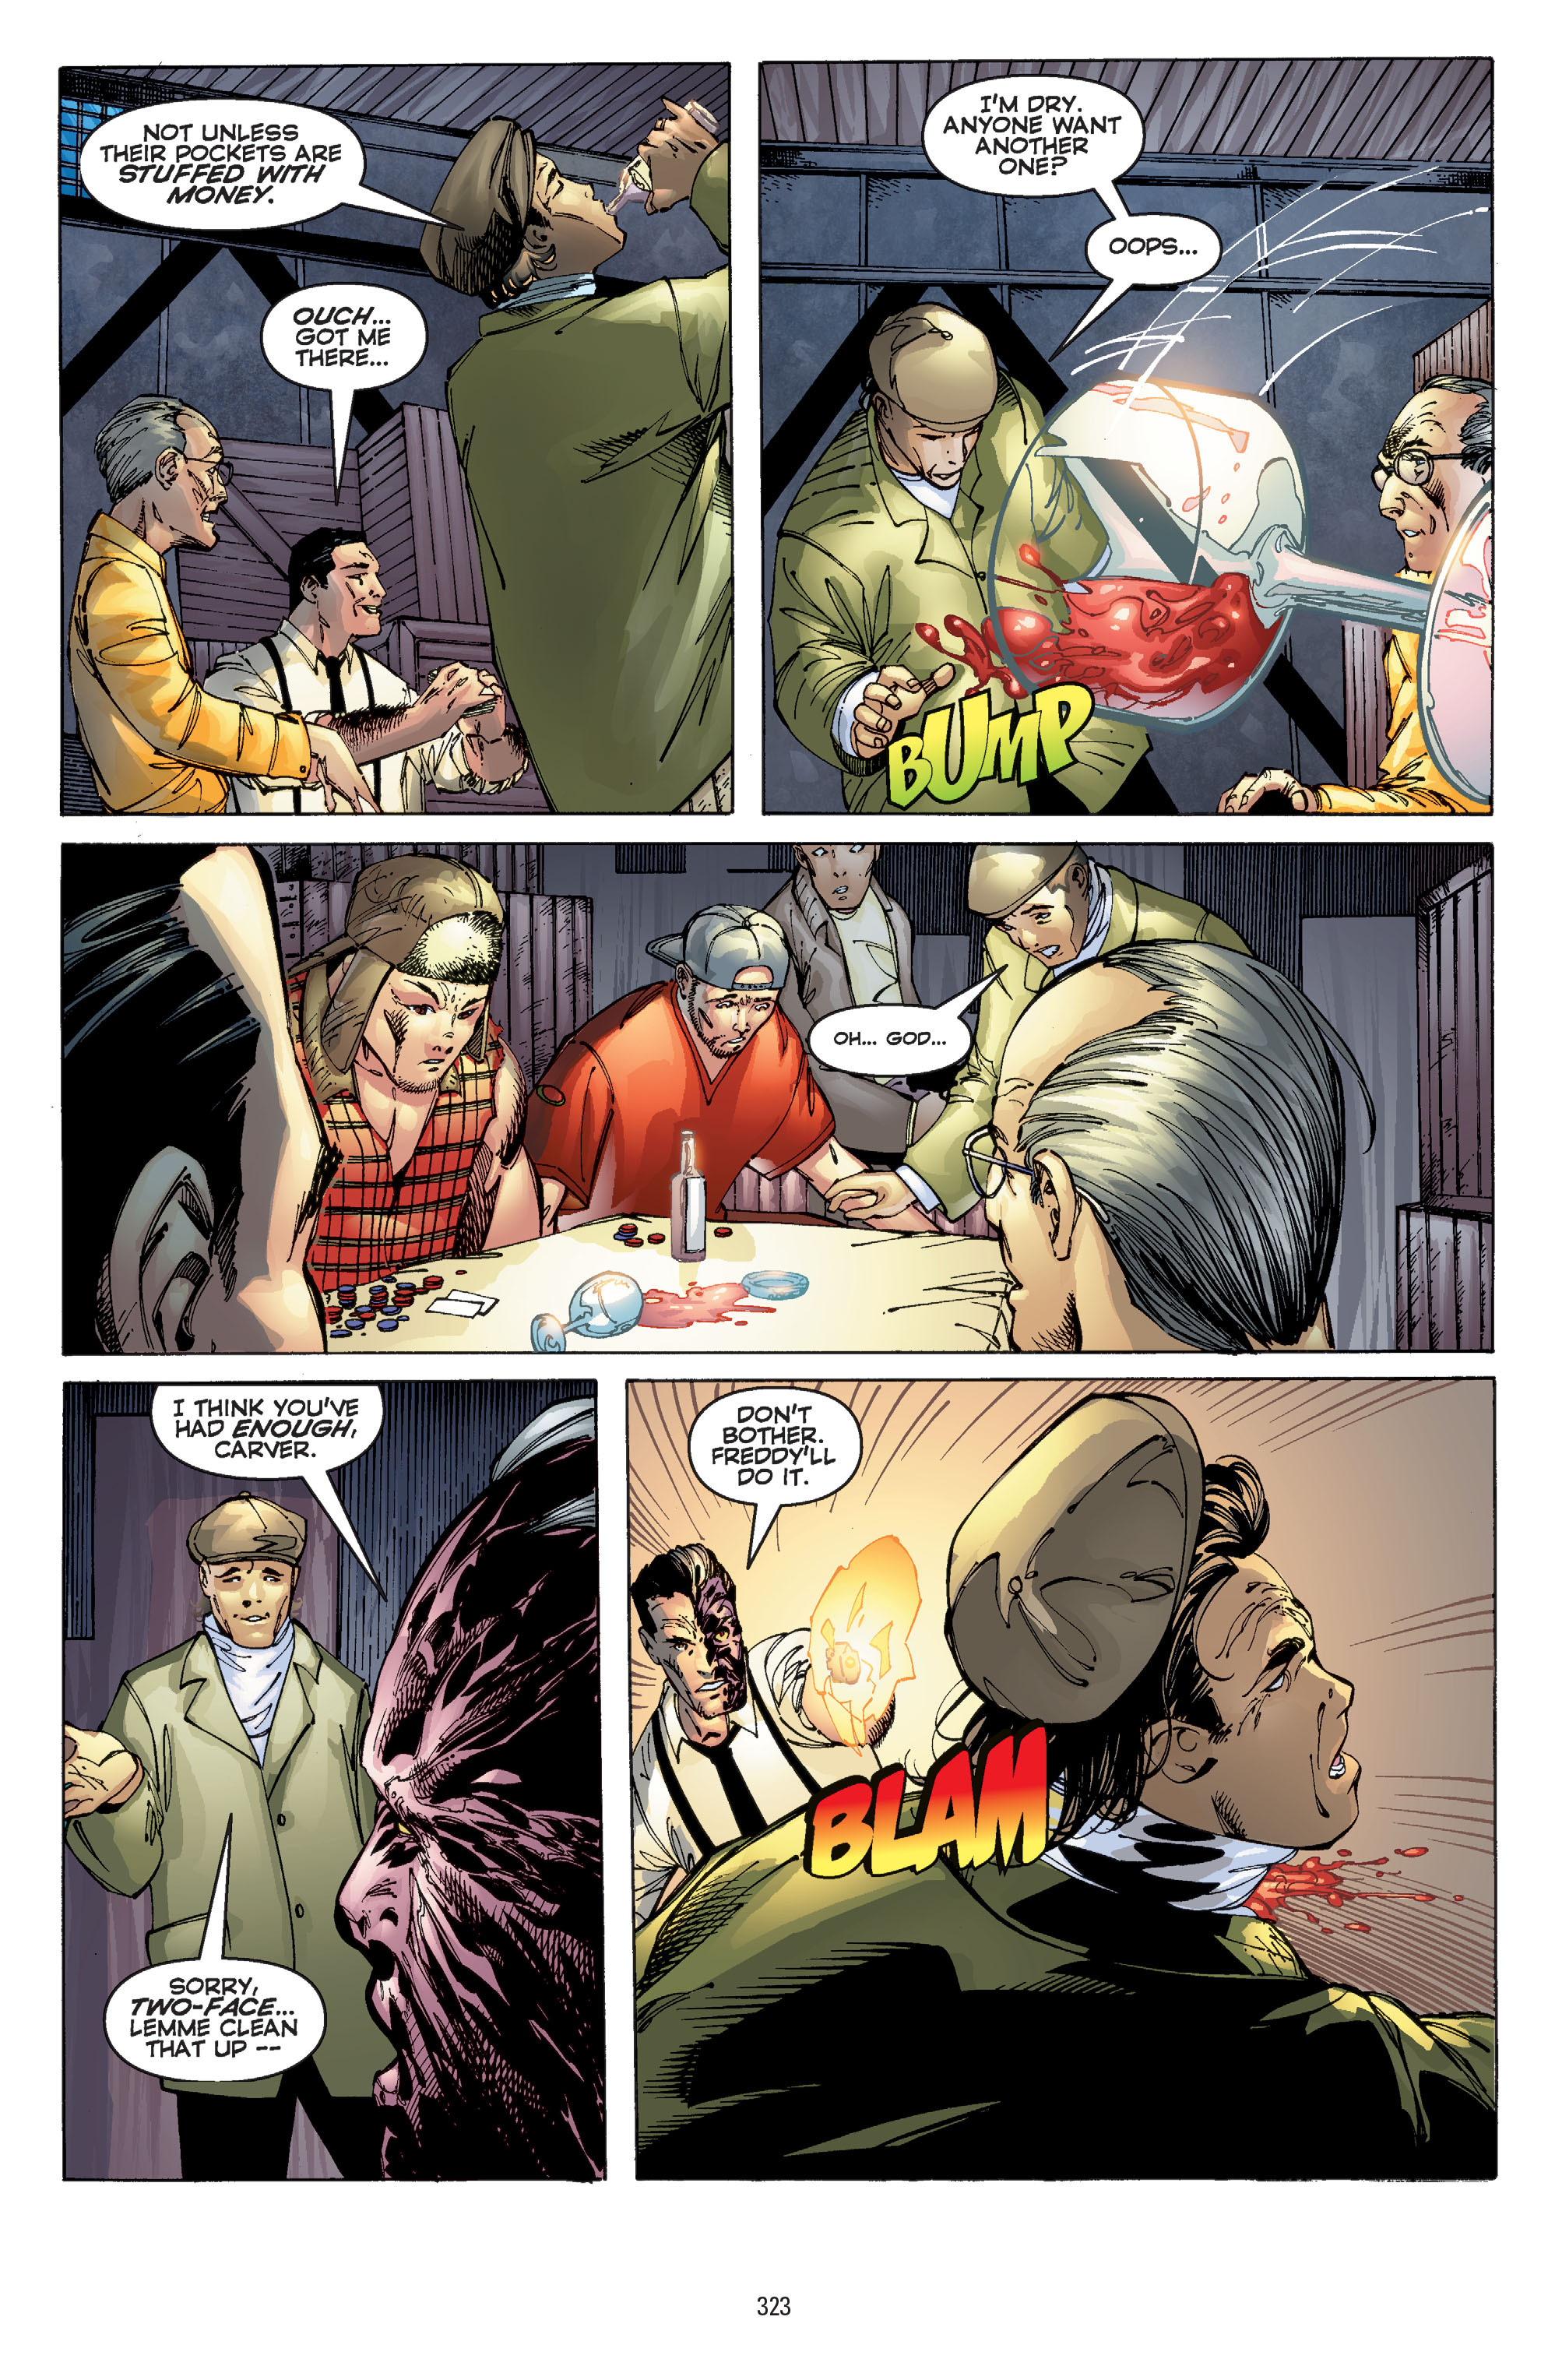 DC Comics/Dark Horse Comics: Justice League Full #1 - English 313